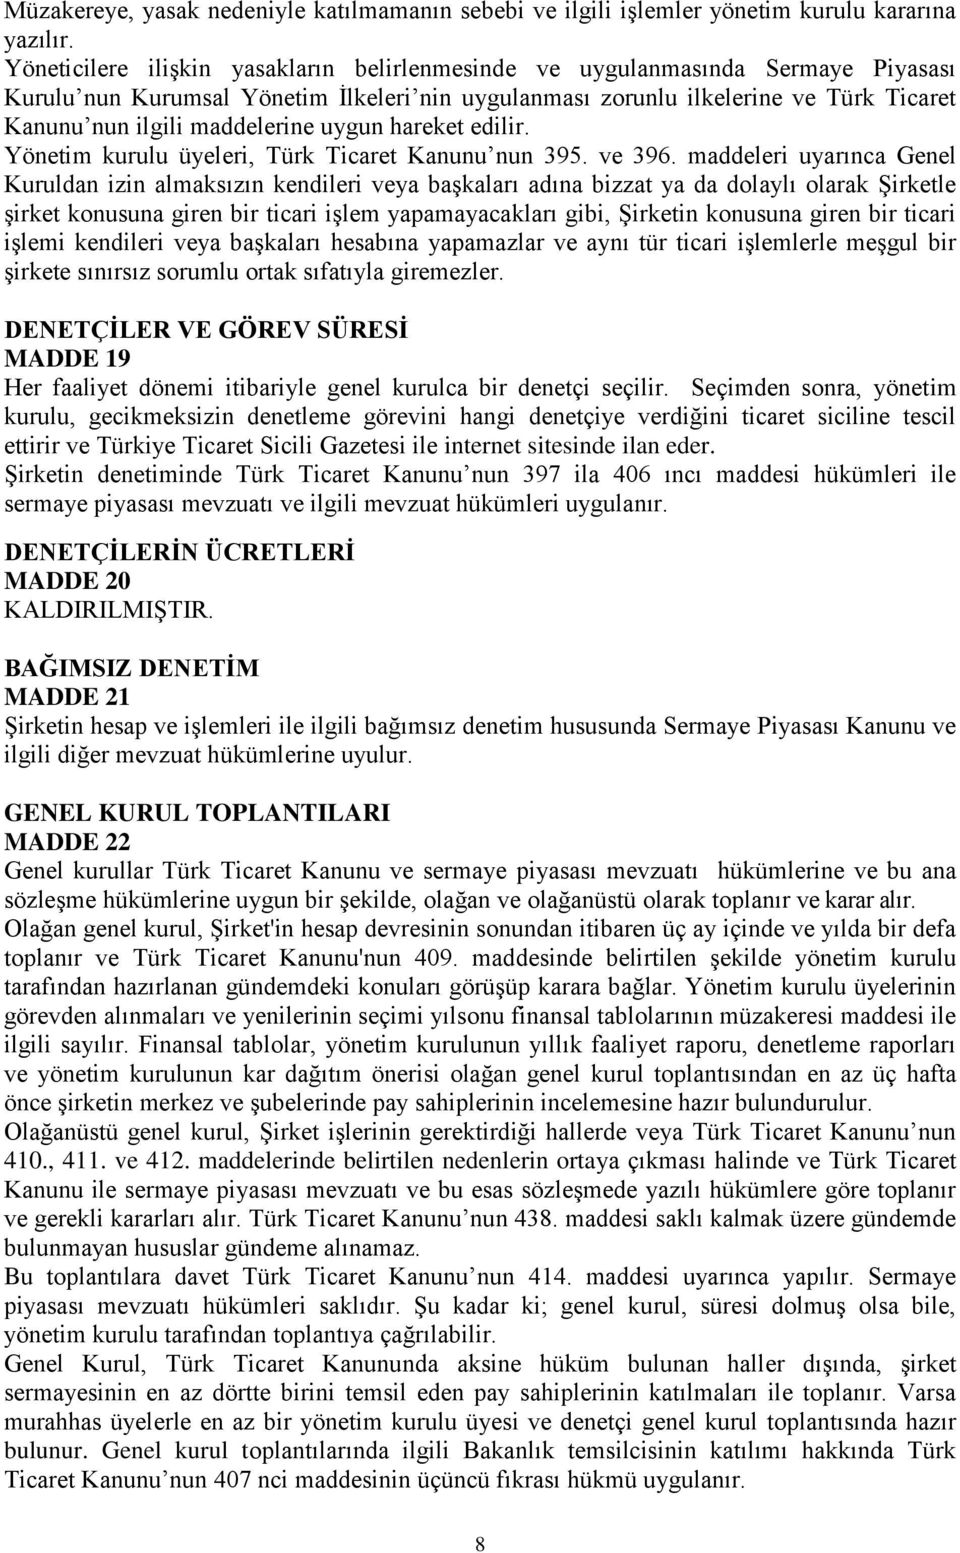 maddelerine uygun hareket edilir. Yönetim kurulu üyeleri, Türk Ticaret Kanunu nun 395. ve 396.